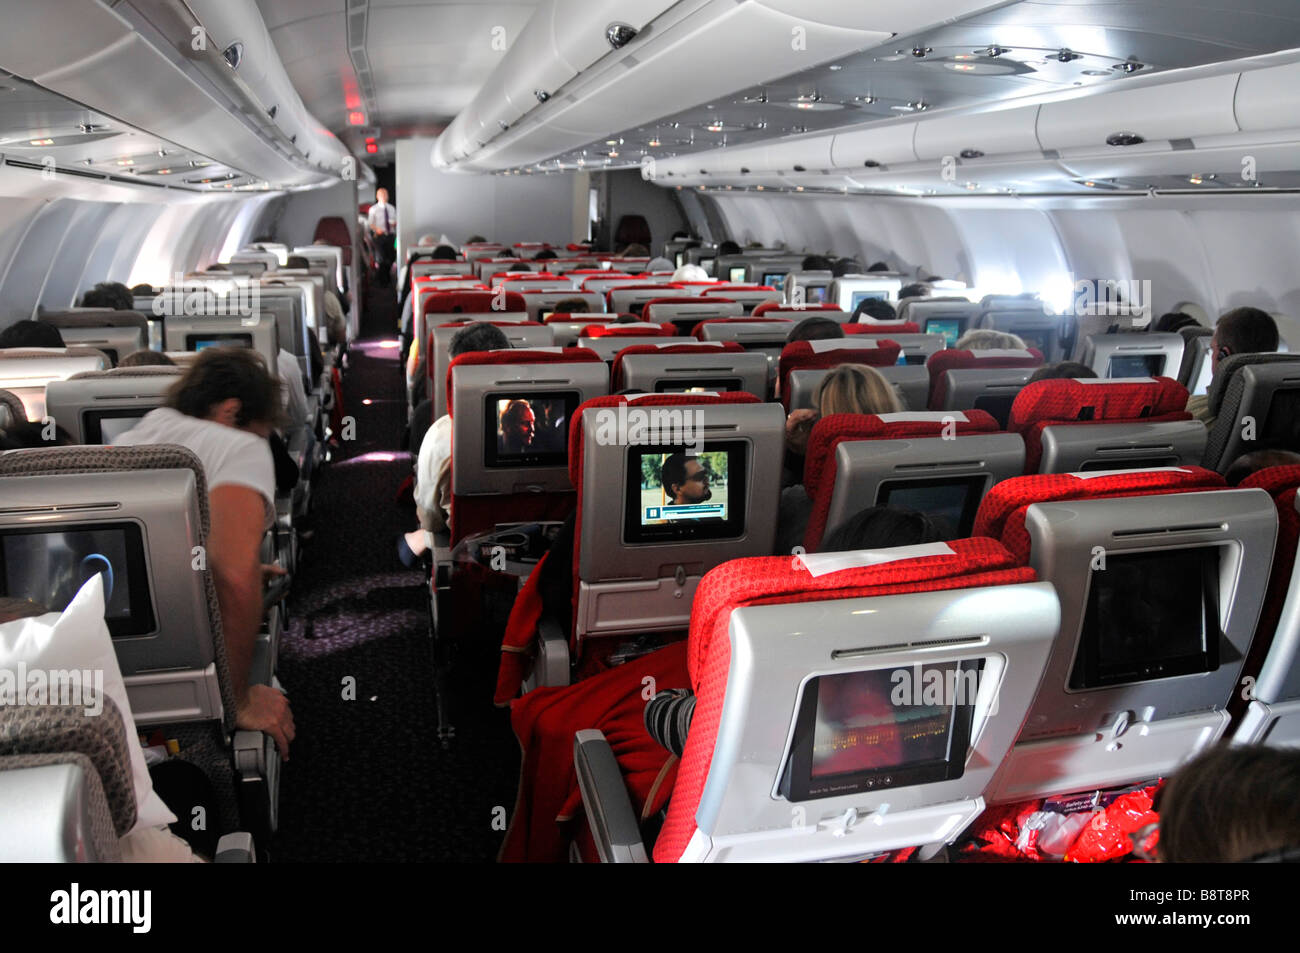 Virgin Atlantic Los pasajeros de cabina de aviones de Airbus viajan en aviones de pasajeros interiores a bordo TV entretenimiento cine pantalla en la parte posterior de los asientos Foto de stock